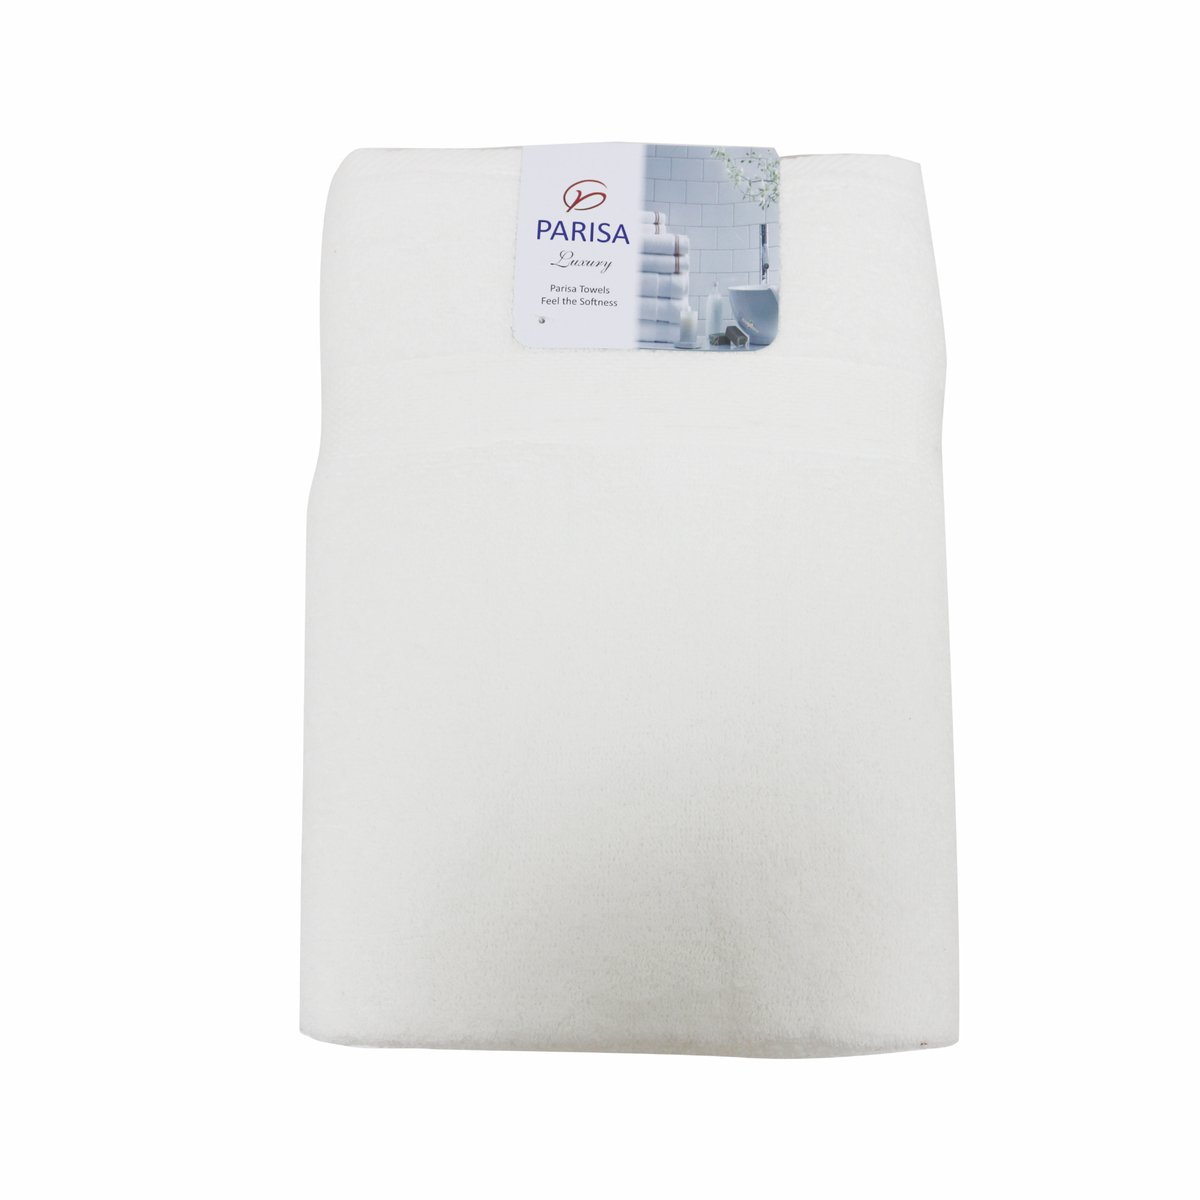 Arrya 100% Cotton Bath Towel White 27x54 490g Pakistan Made